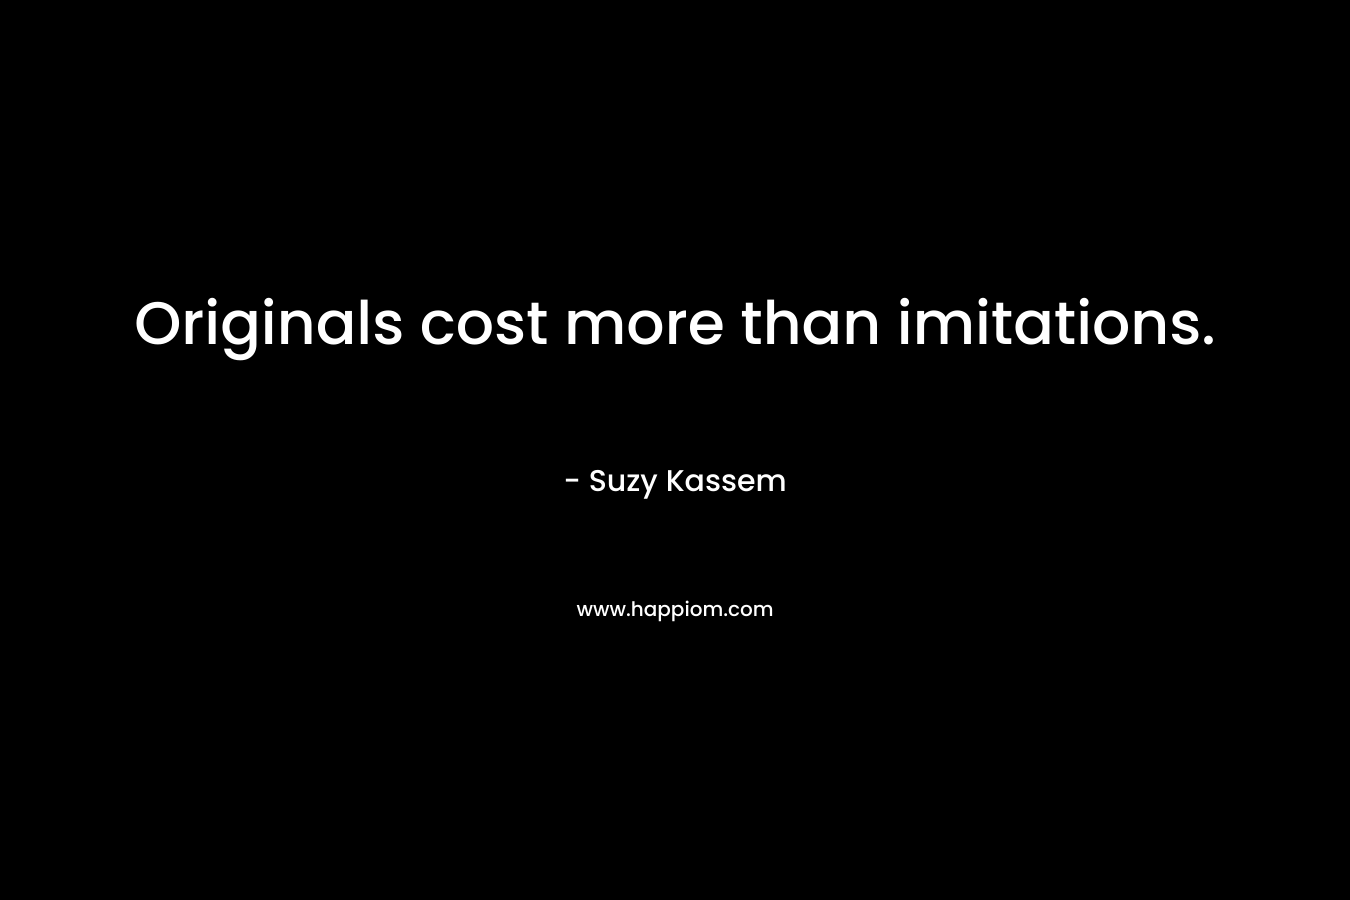 Originals cost more than imitations.